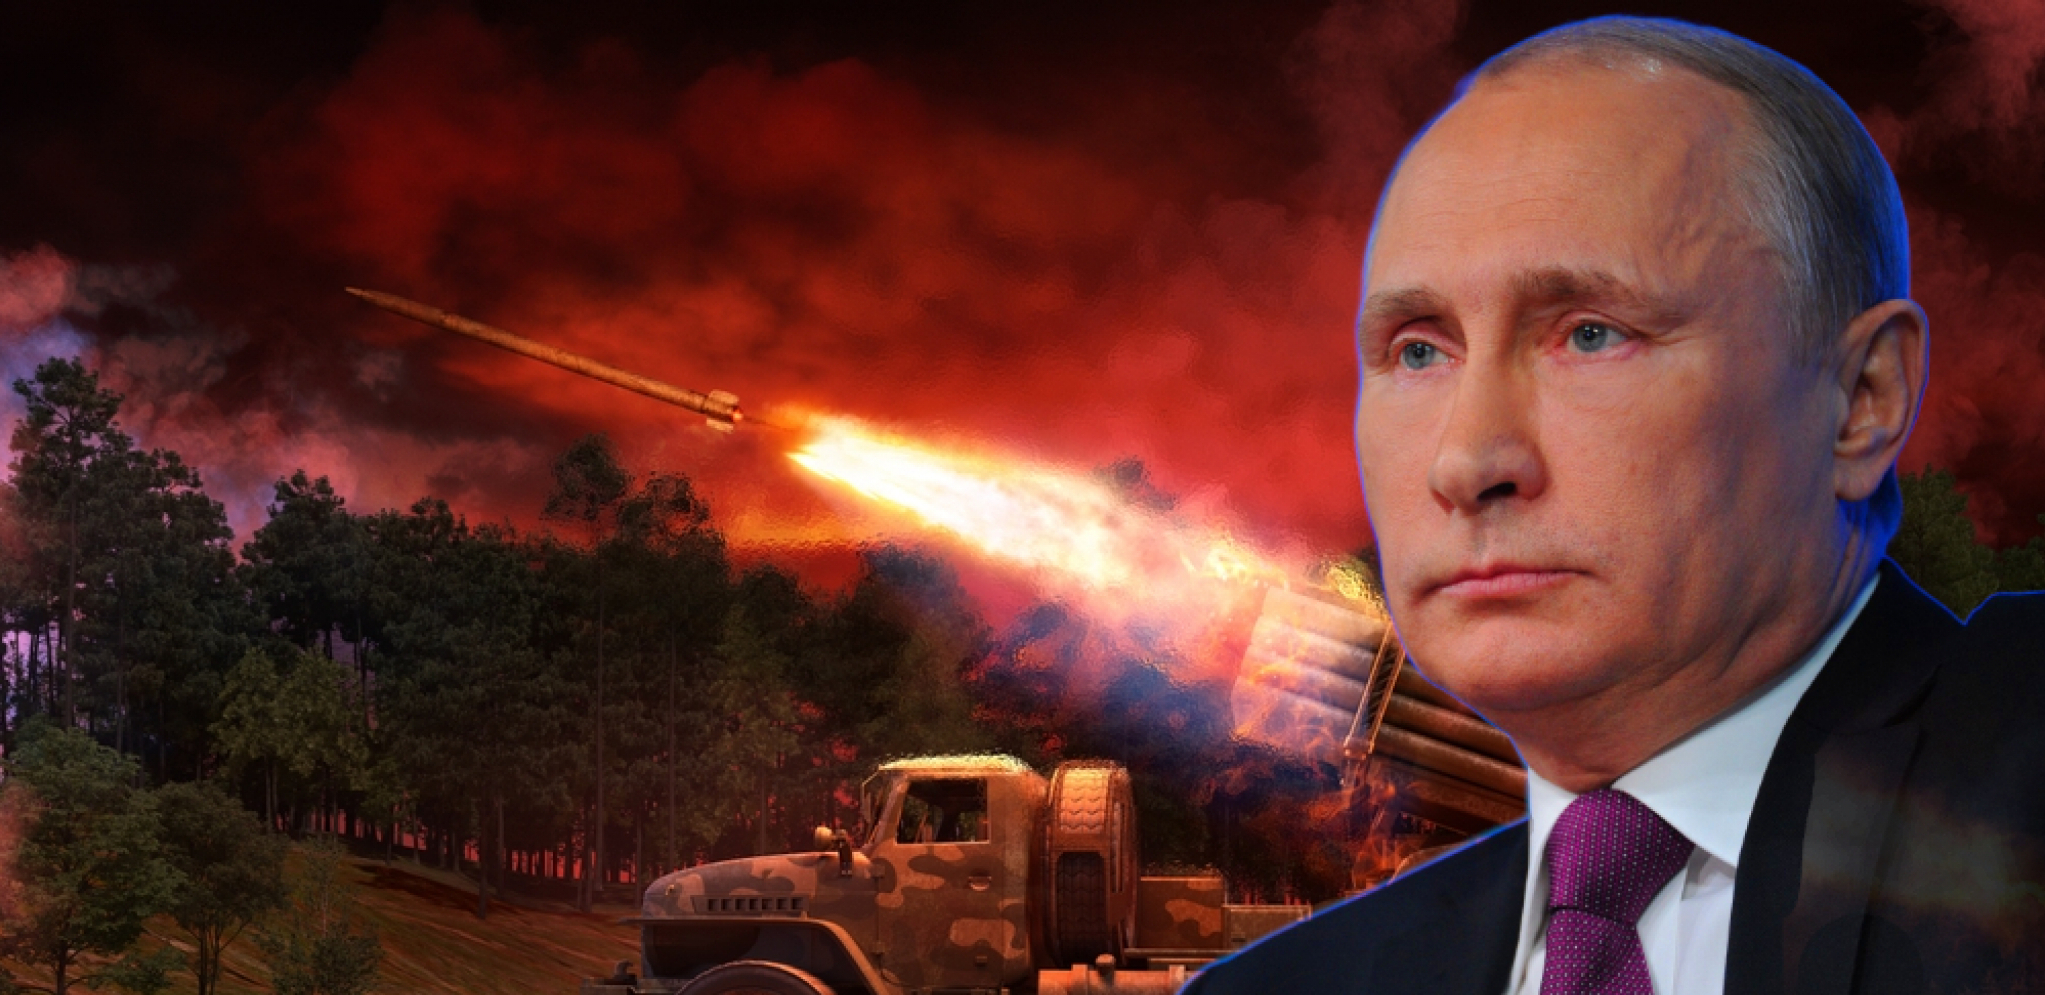 "OVO JE NAŠ GLAVNI CILJ" Putin naglasio u kom pravcu ide Rusija: Ta misija će sigurno biti završena!